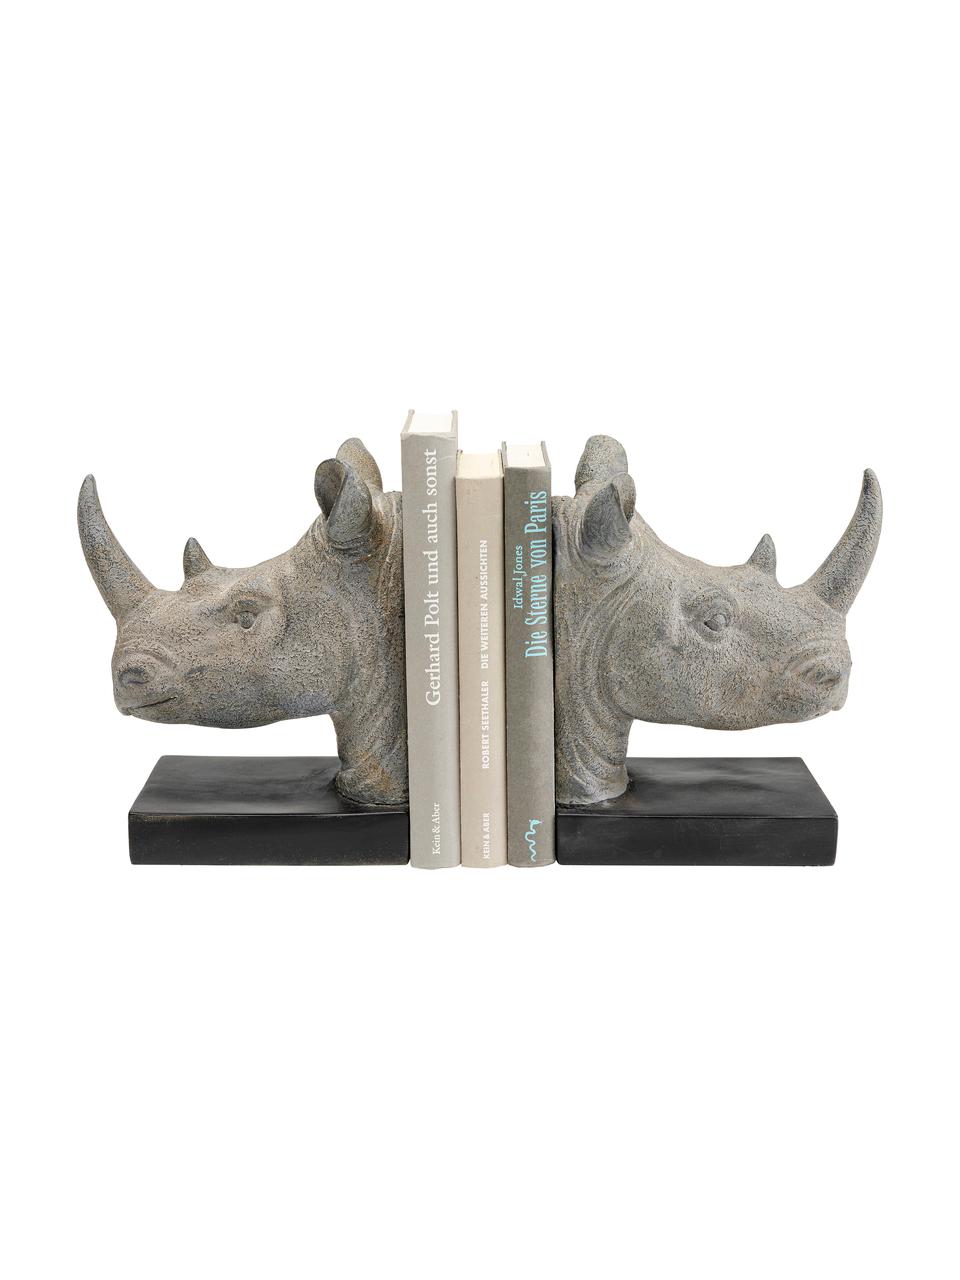 Podpórka do książek Rhino, 2 elem., Poliresing, Szary, czarny, S 33 x W 20 cm